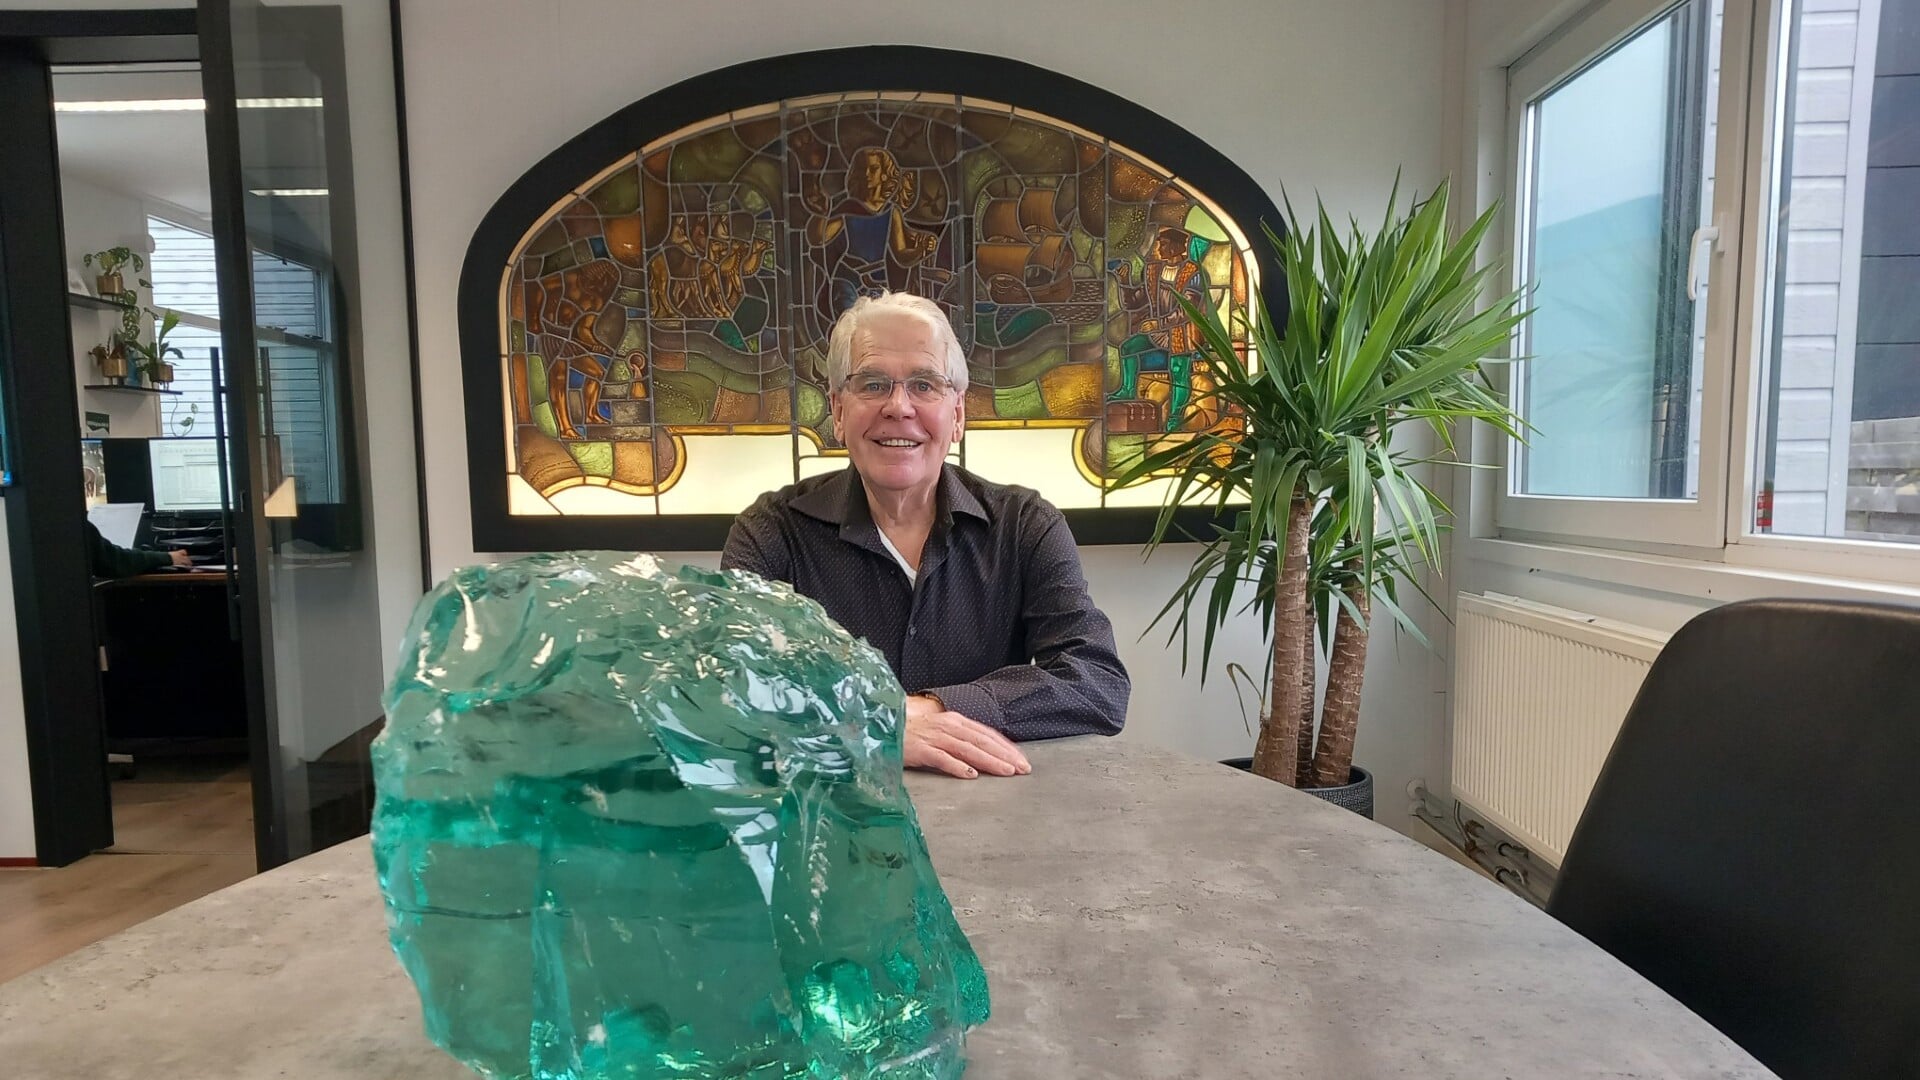 Nico Visser startte op 1 januari van dit jaar zijn adviesburo in glas. Het object van glas op de voorgrond symboliseert 'een kei van een glasadviseur'. 